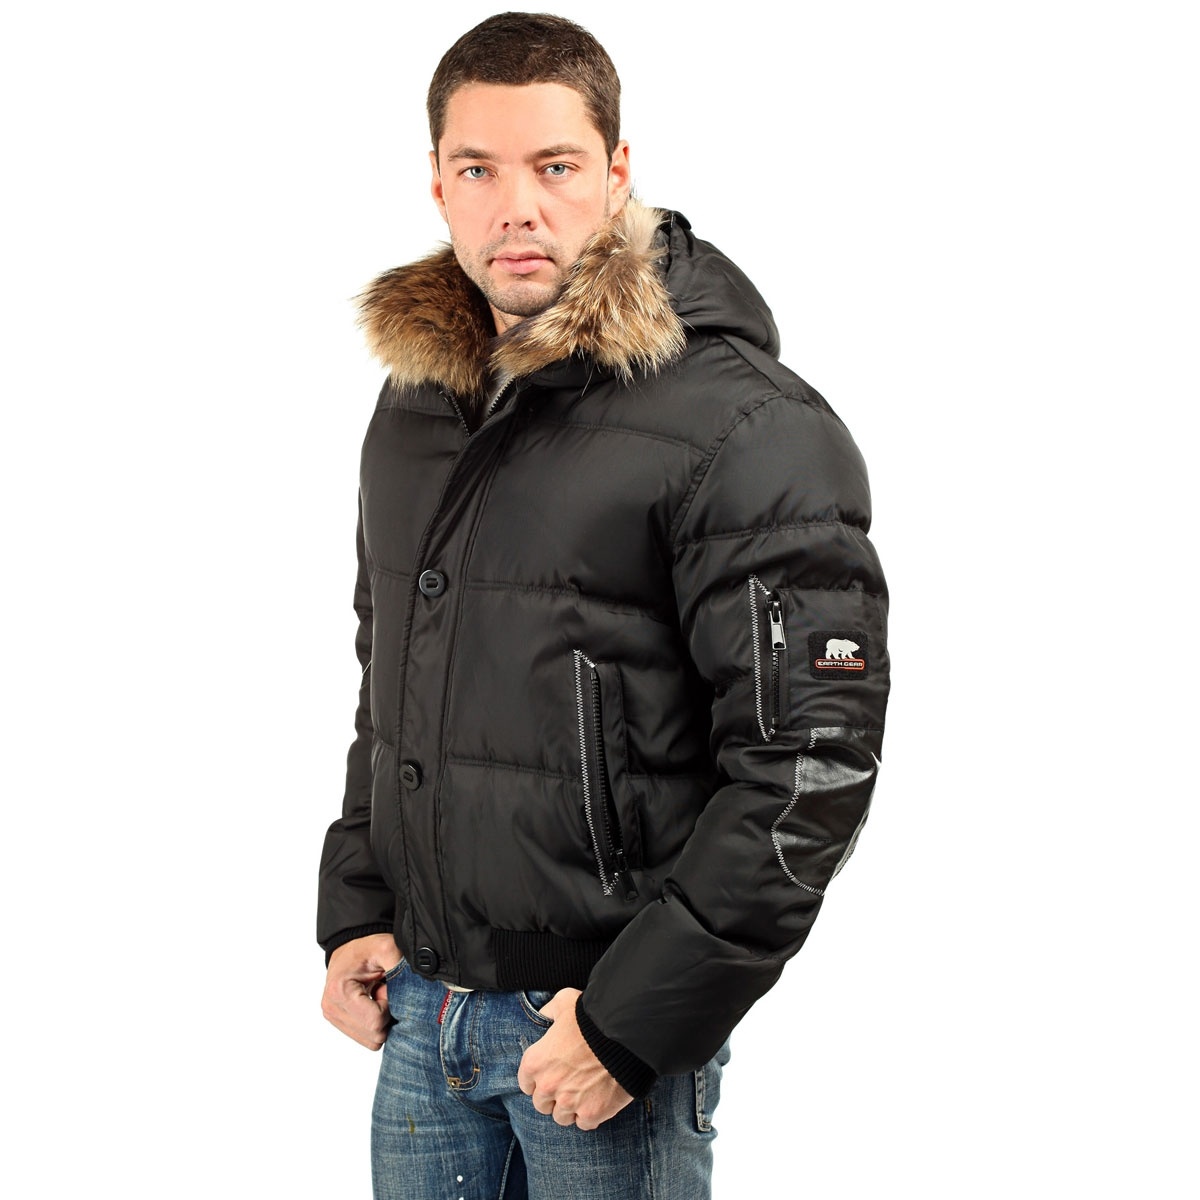 Мужские зимние куртки в москве